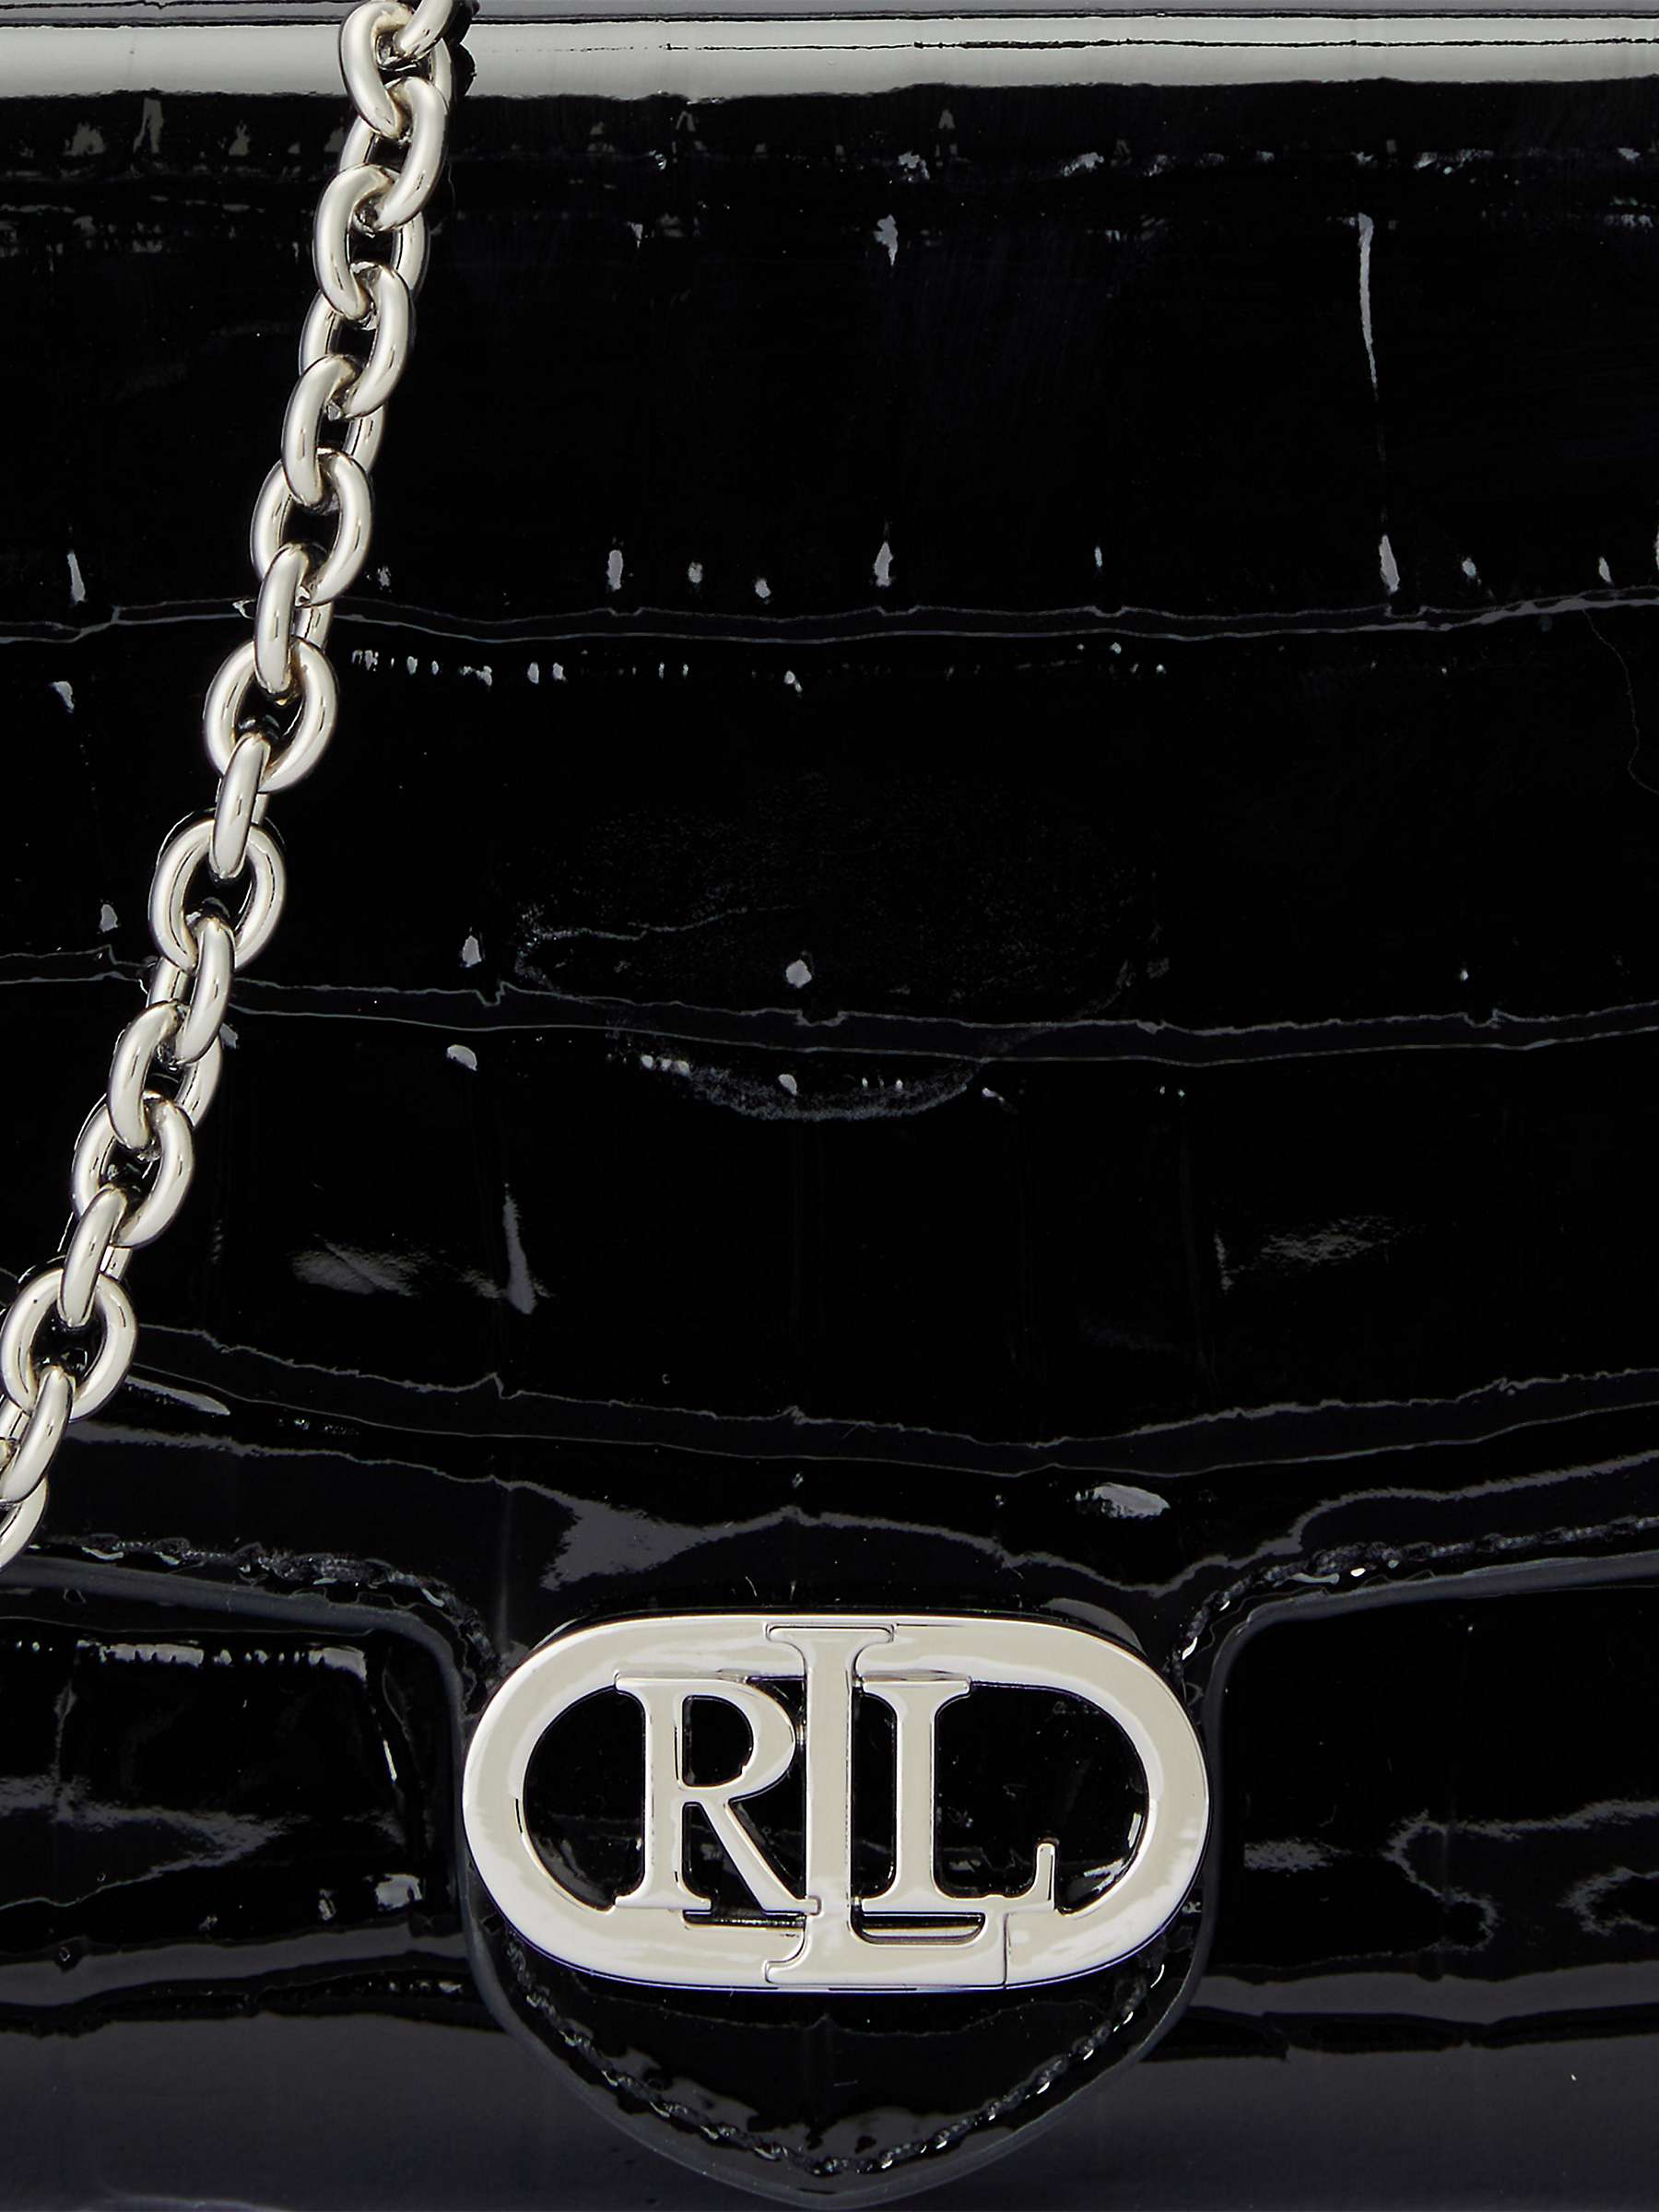 Buy Lauren Ralph Lauren Adair Leather Croc Cross Body Bag, Black Online at johnlewis.com